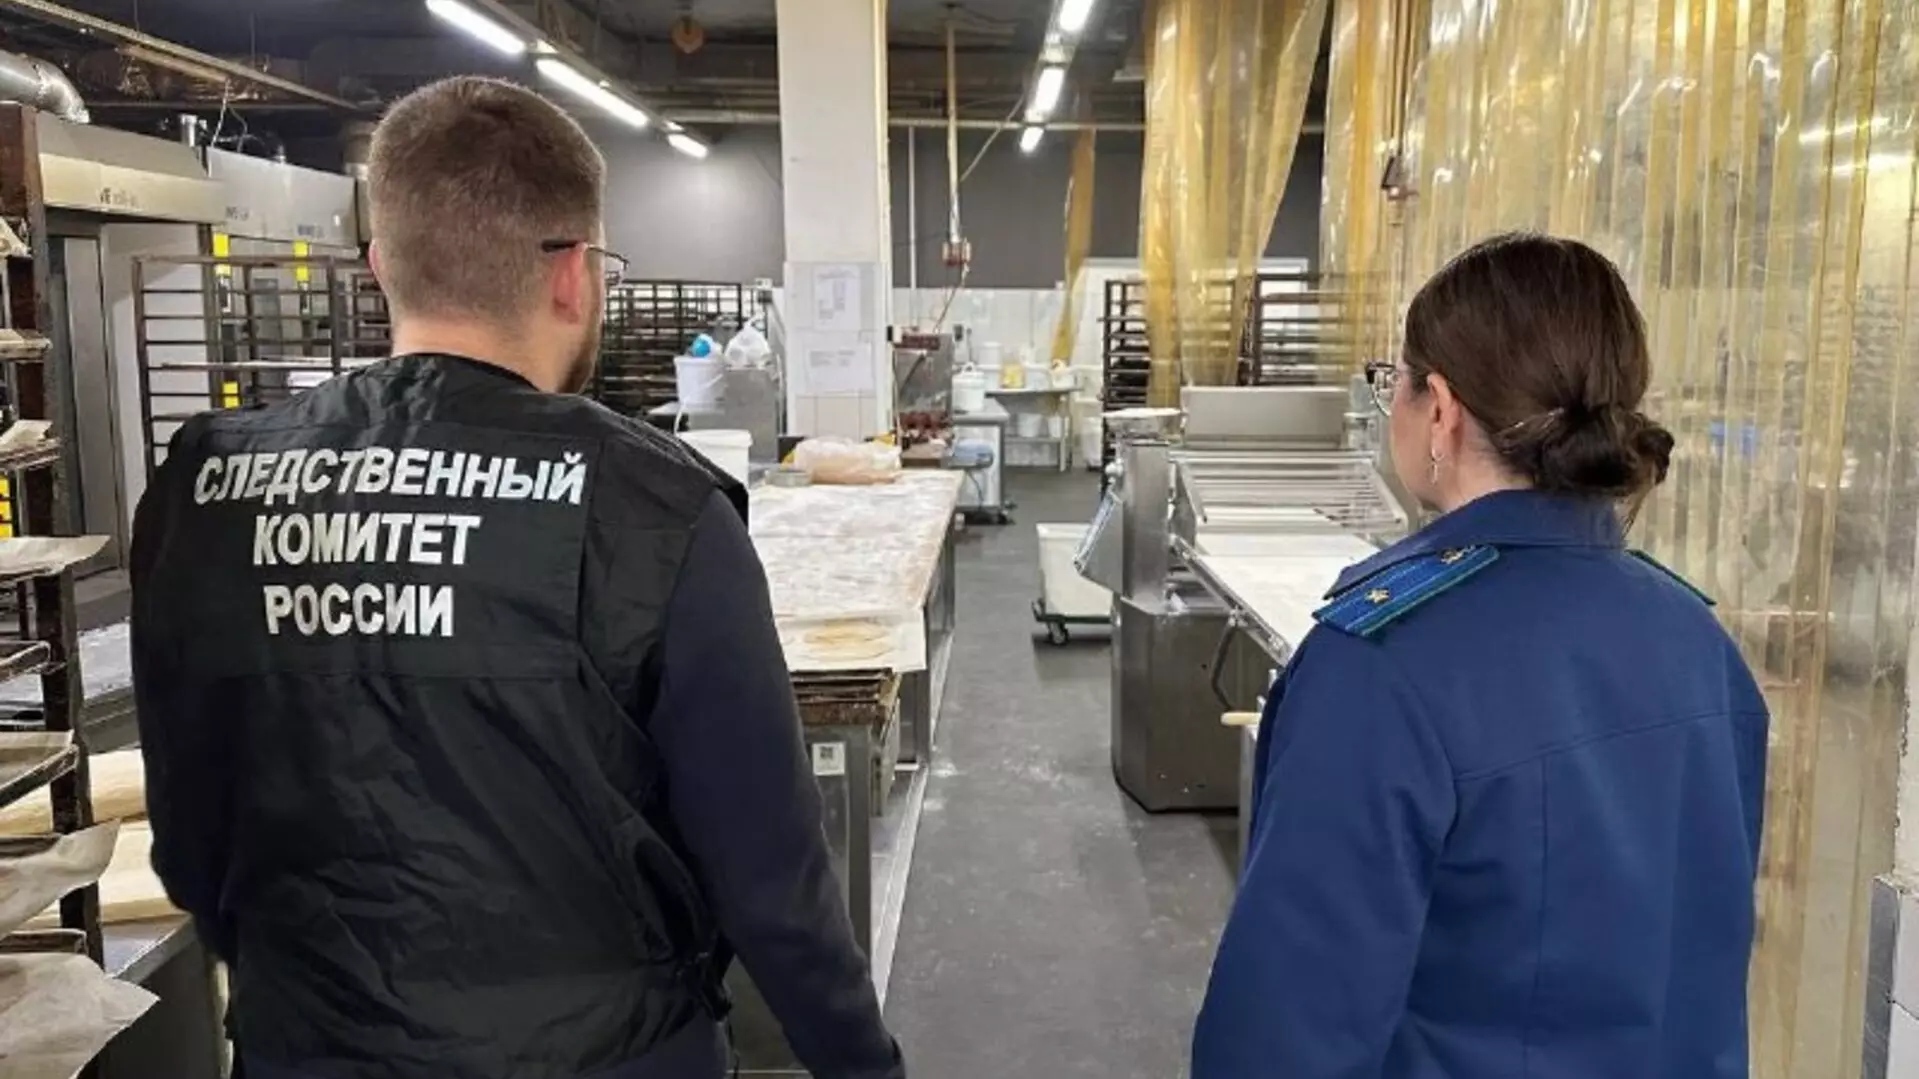 Кондитеры из «Кузины» пожаловались на невыплату зарплаты в Новосибирске